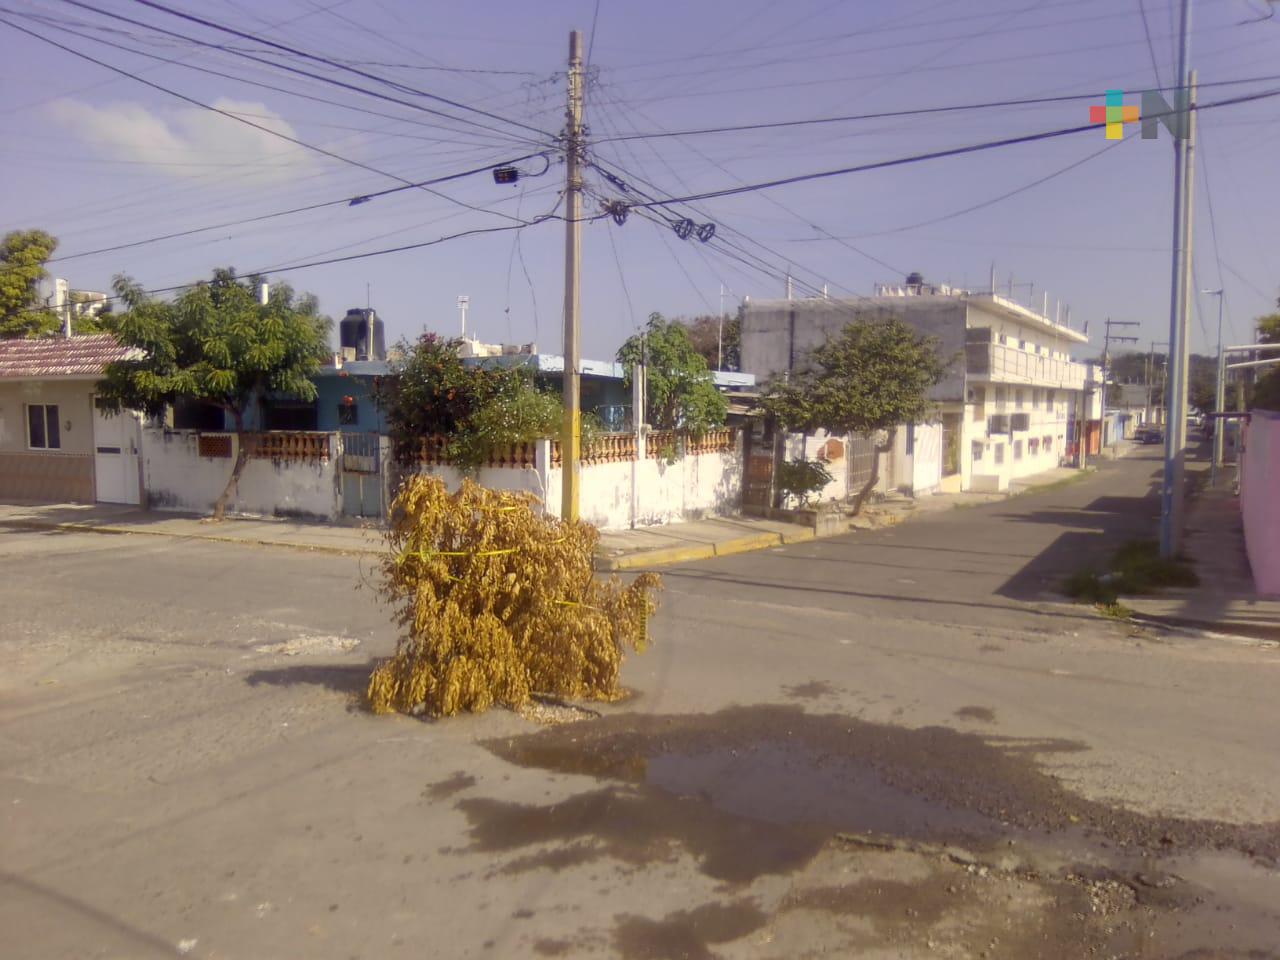 Colocan árbol en registro sin tapa en colonia de Veracruz, piden atender problema